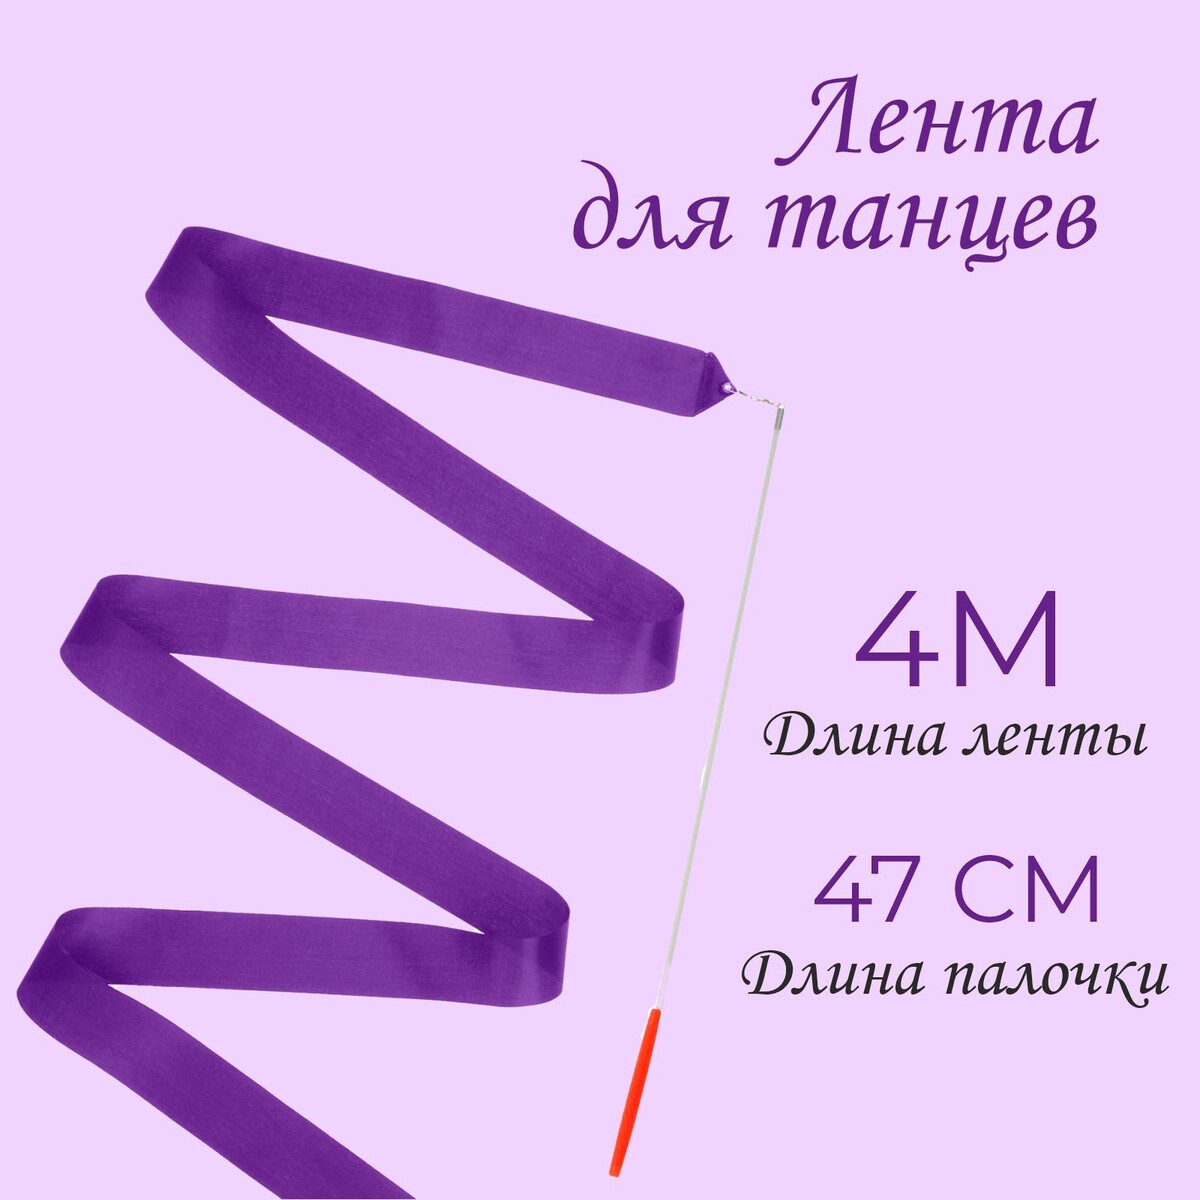 Лента для танцев, длина 4 м, цвет фиолетовый эспандер лента sangh эластичная с захватами 90х4 см фиолетовый